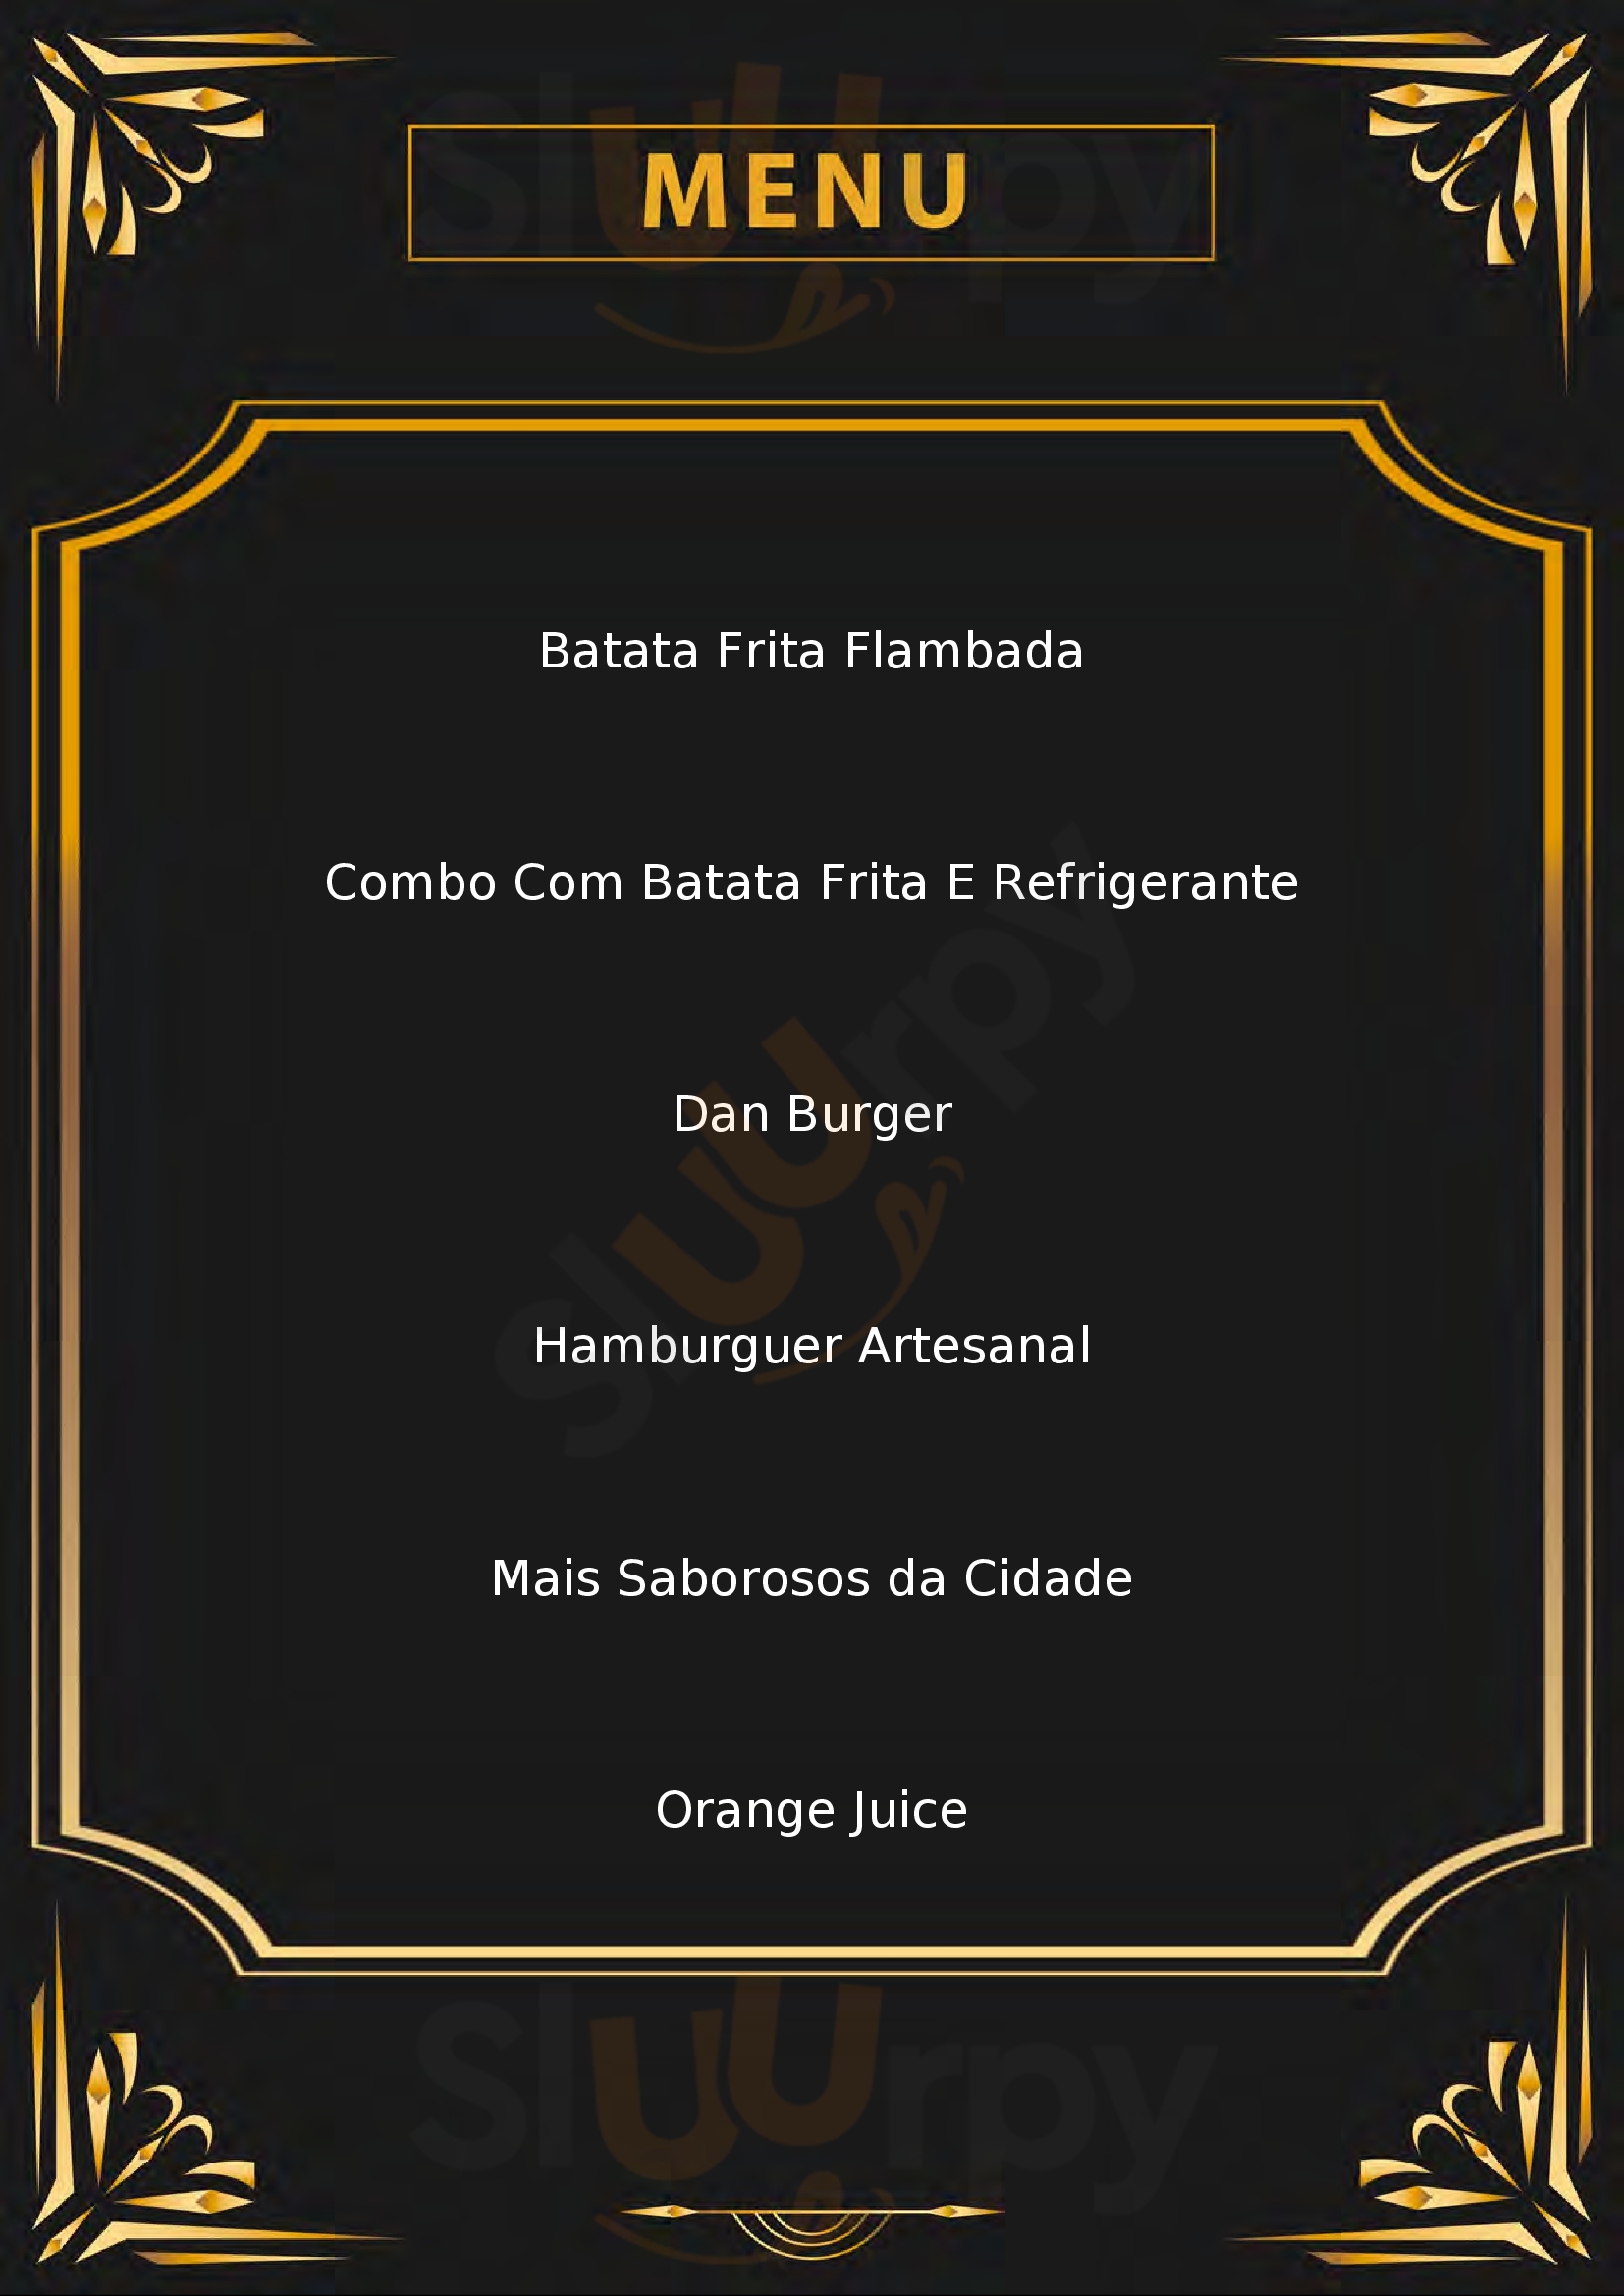 Dan Burger Palmas Menu - 1